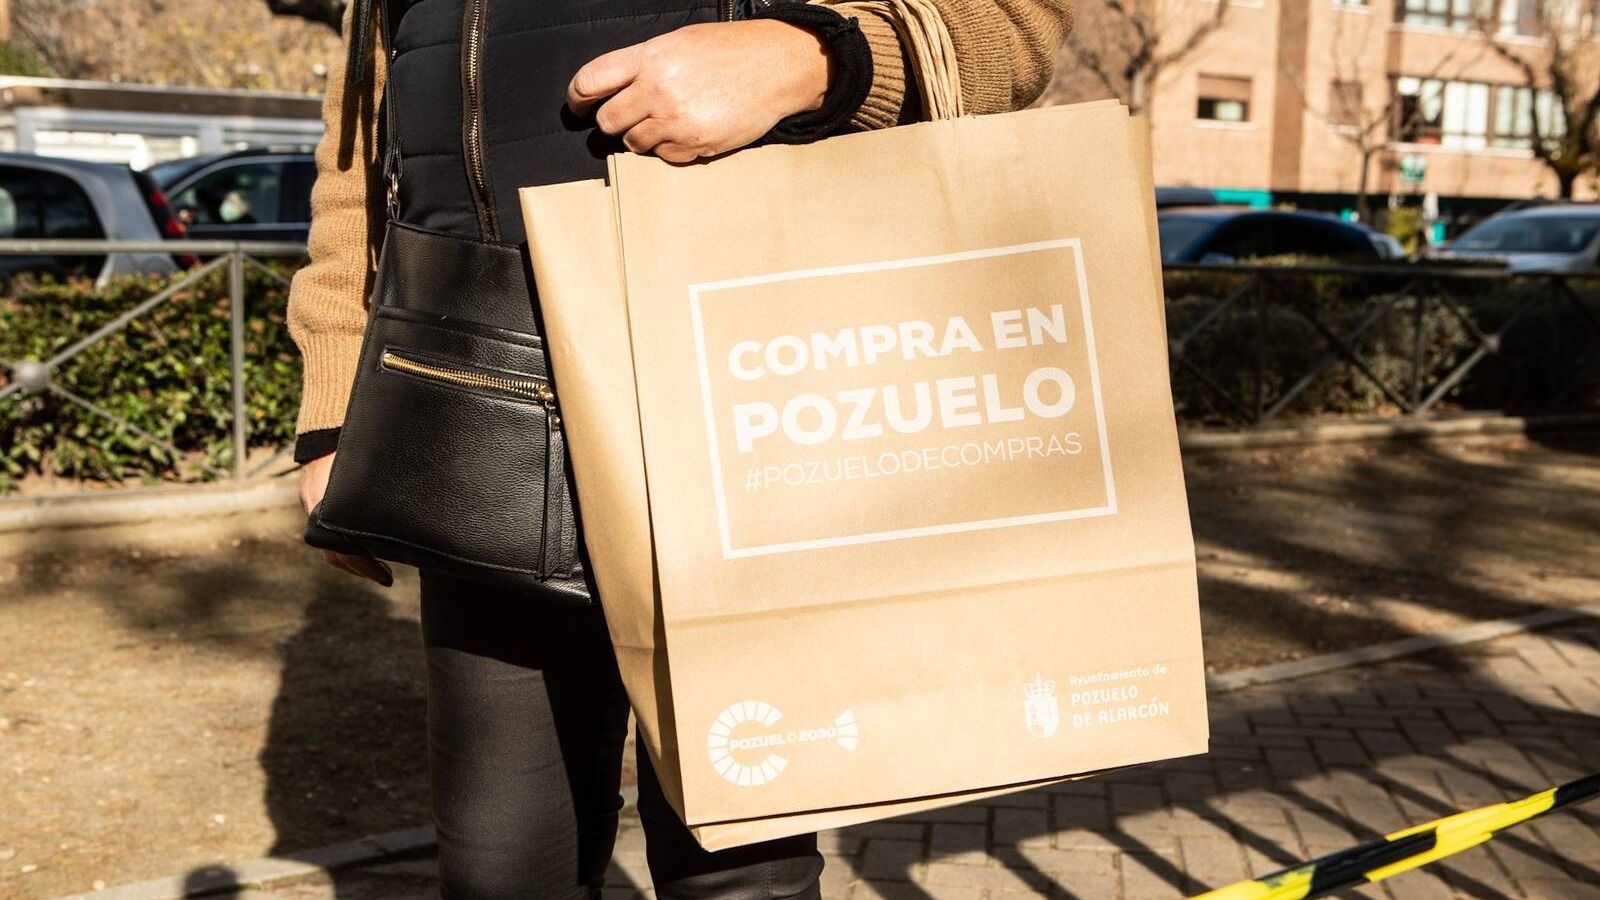 Comienza la campaña 'Rebajas de Enero' en Pozuelo de Alarcón para promocionar el comercio local